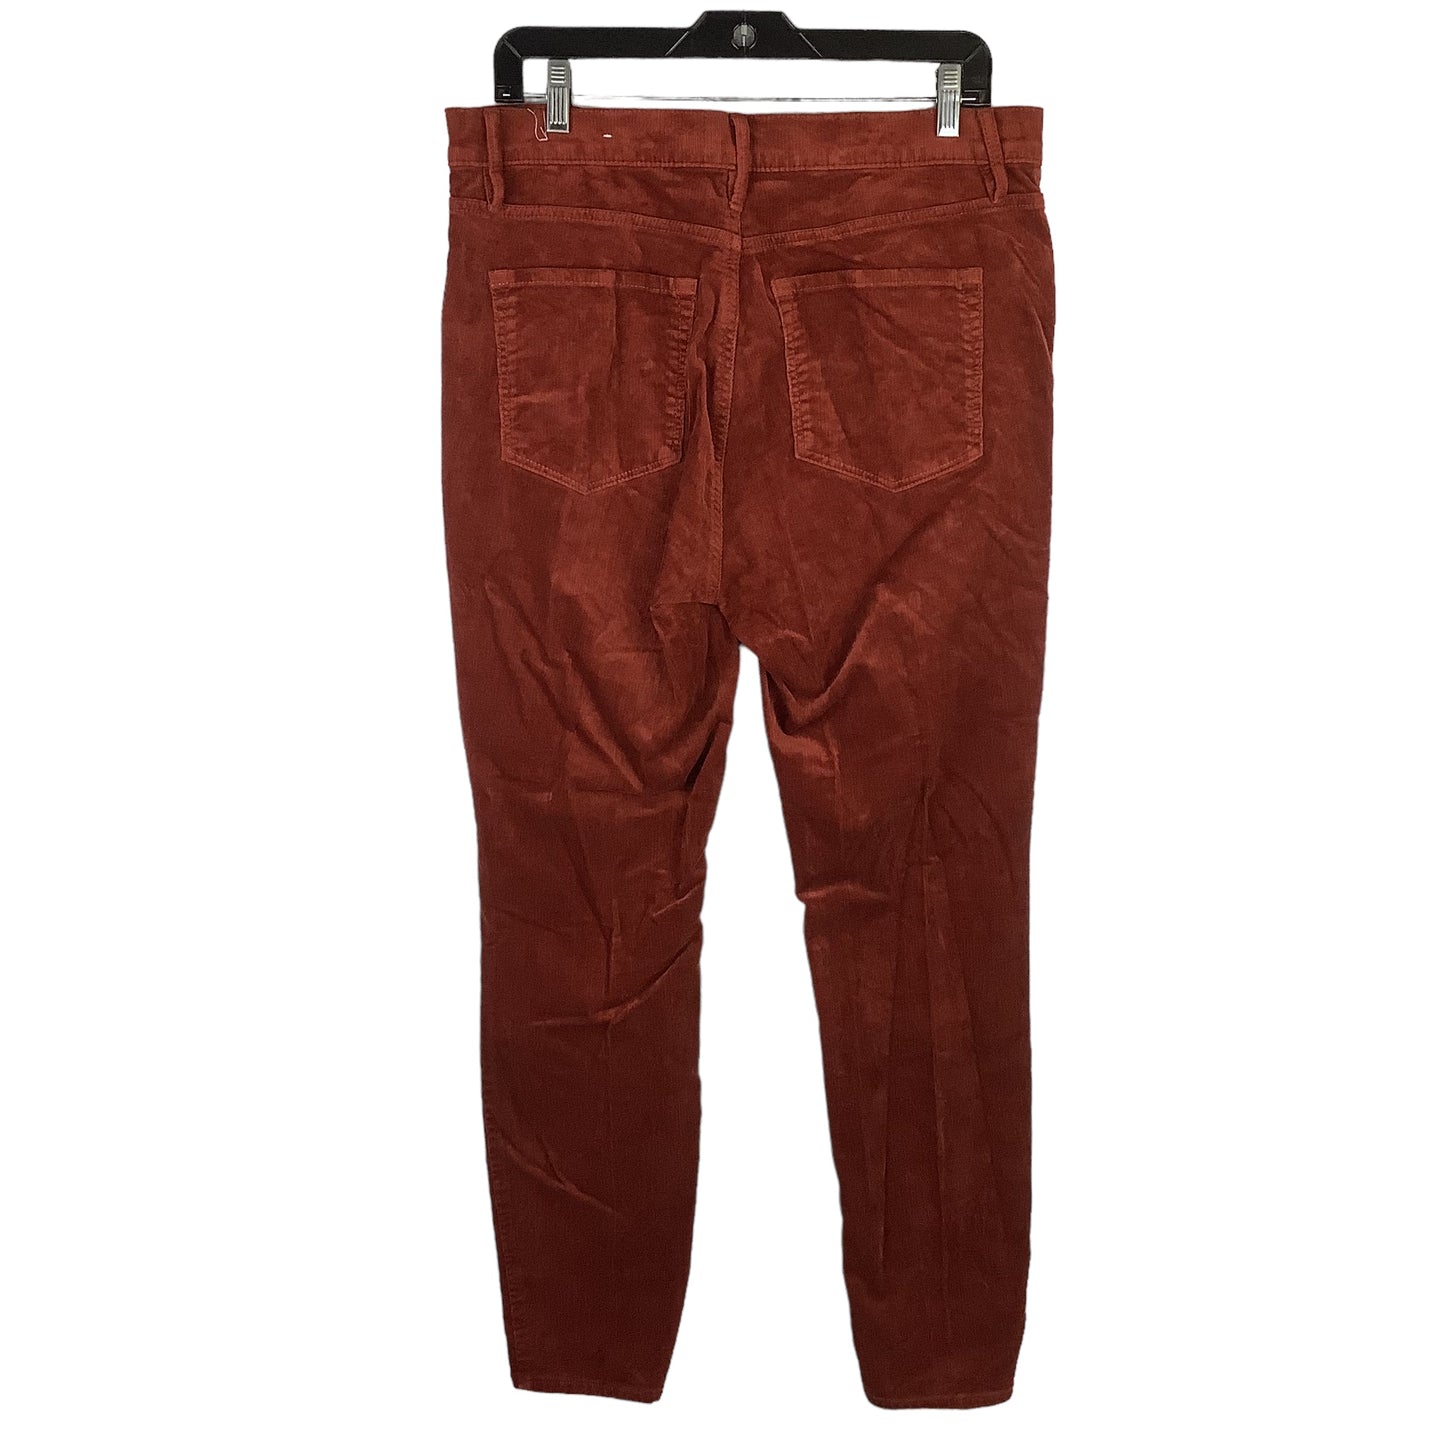 Pants Corduroy By Loft O  Size: 12